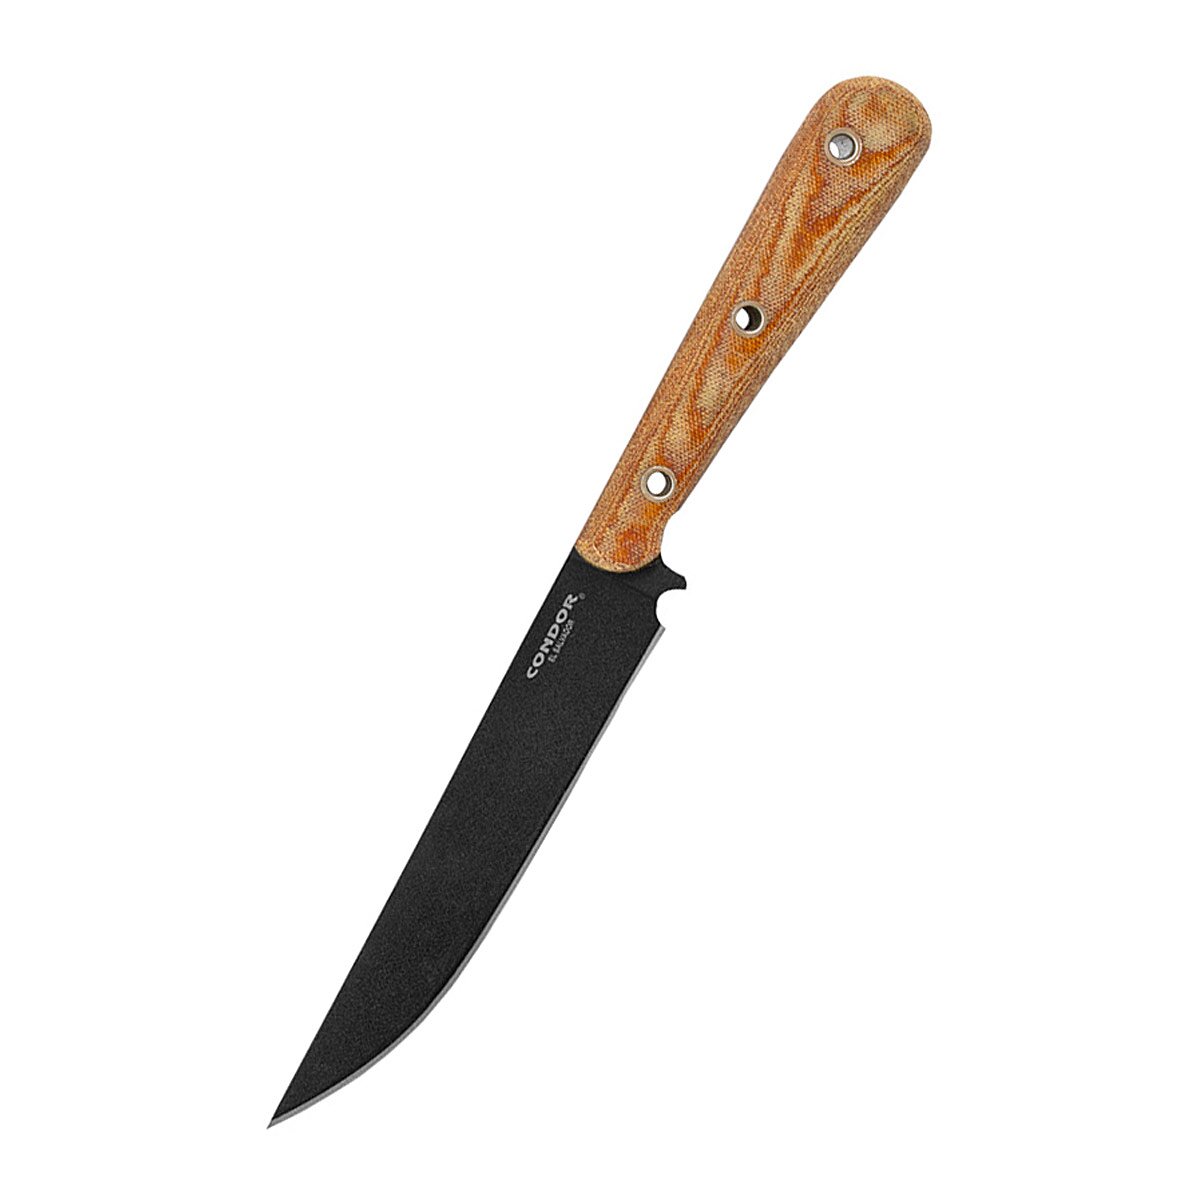 Skirmish knife, Condor